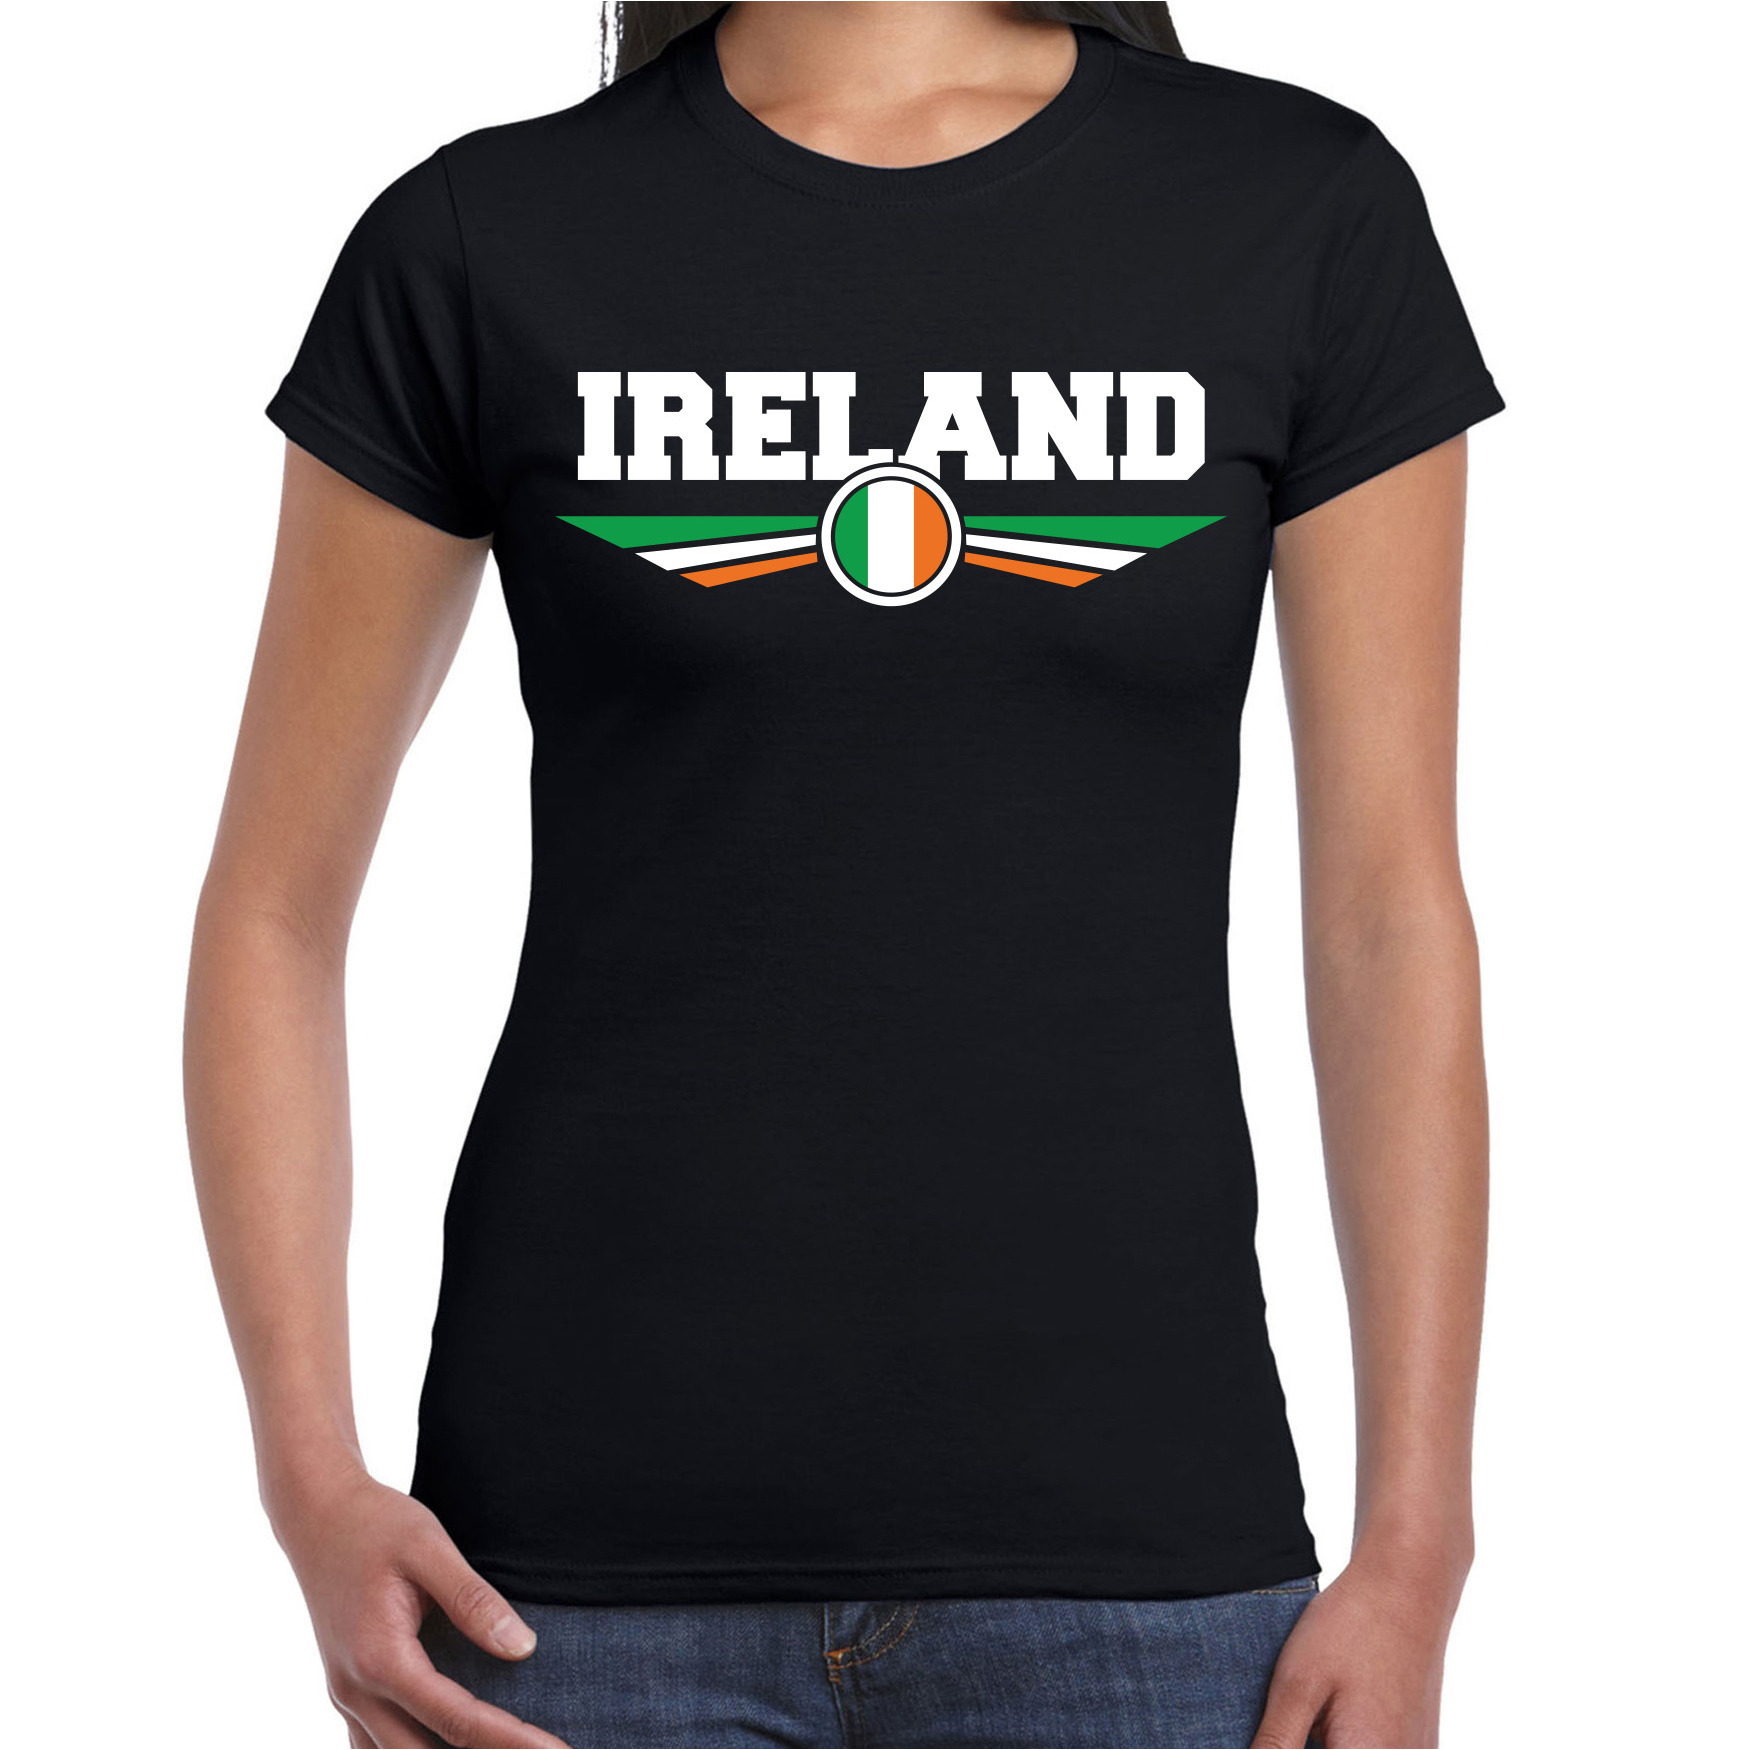 Ierland-Ireland landen t-shirt zwart dames